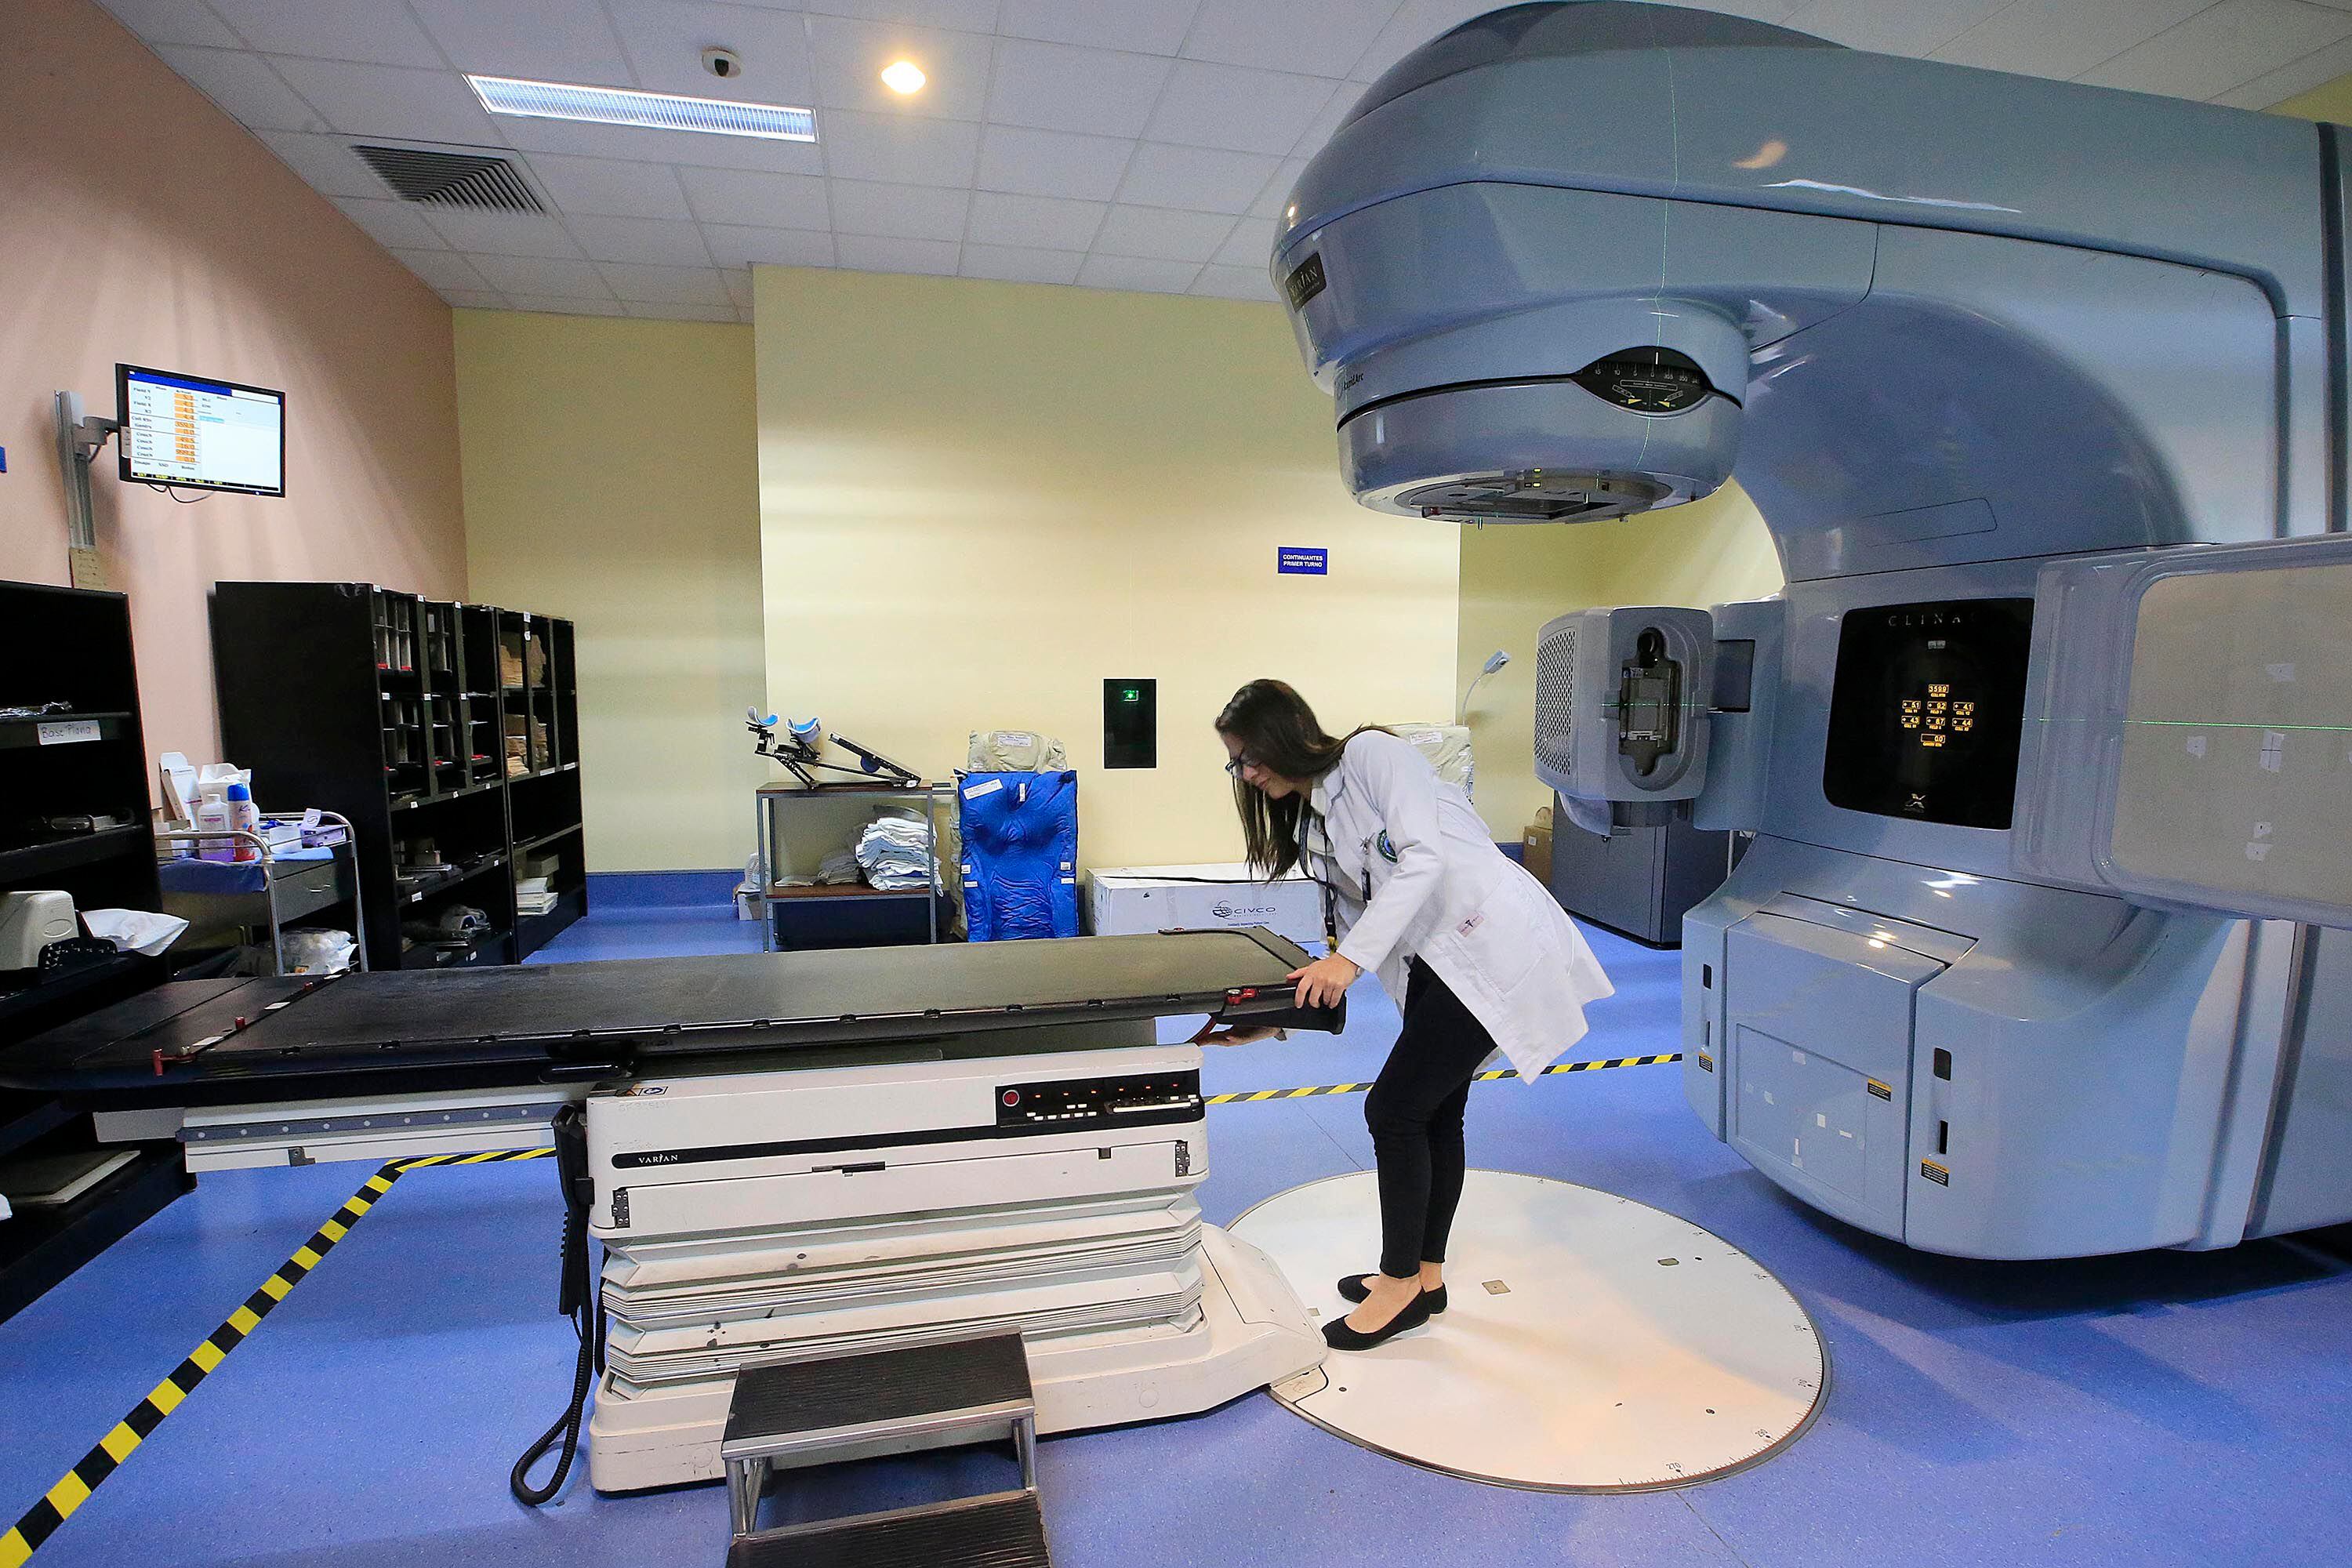 Enfermos de cáncer sufren por fallos en equipos de radioterapia: mitad de aceleradores dañados